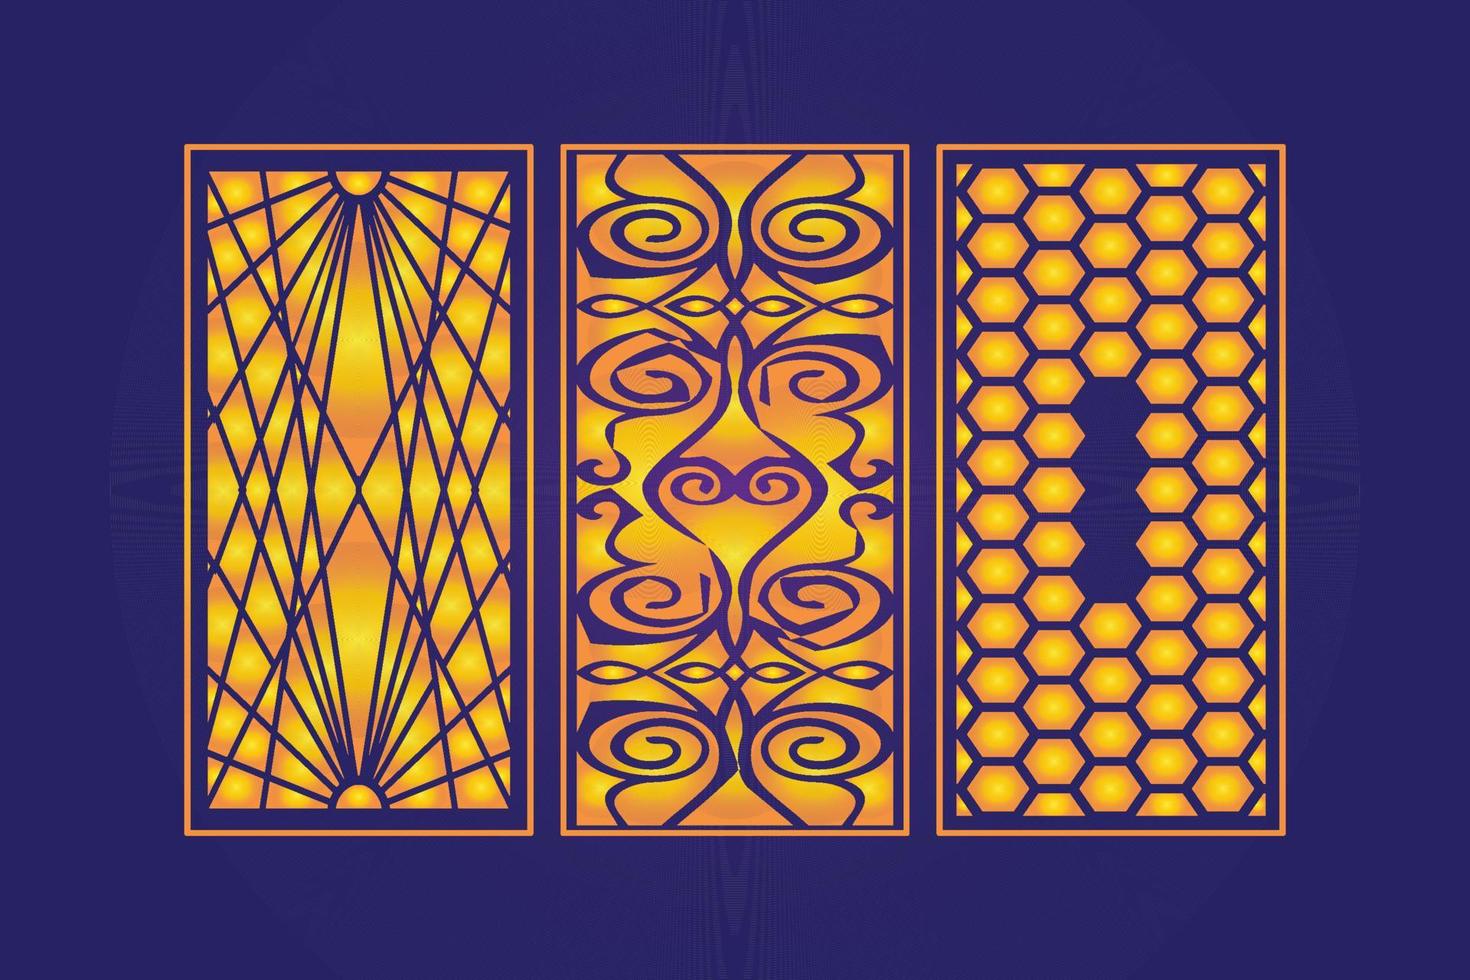 modèle de panneaux décoratifs islamiques découpés au laser avec texture géométrique abstraite et laser floral vecteur